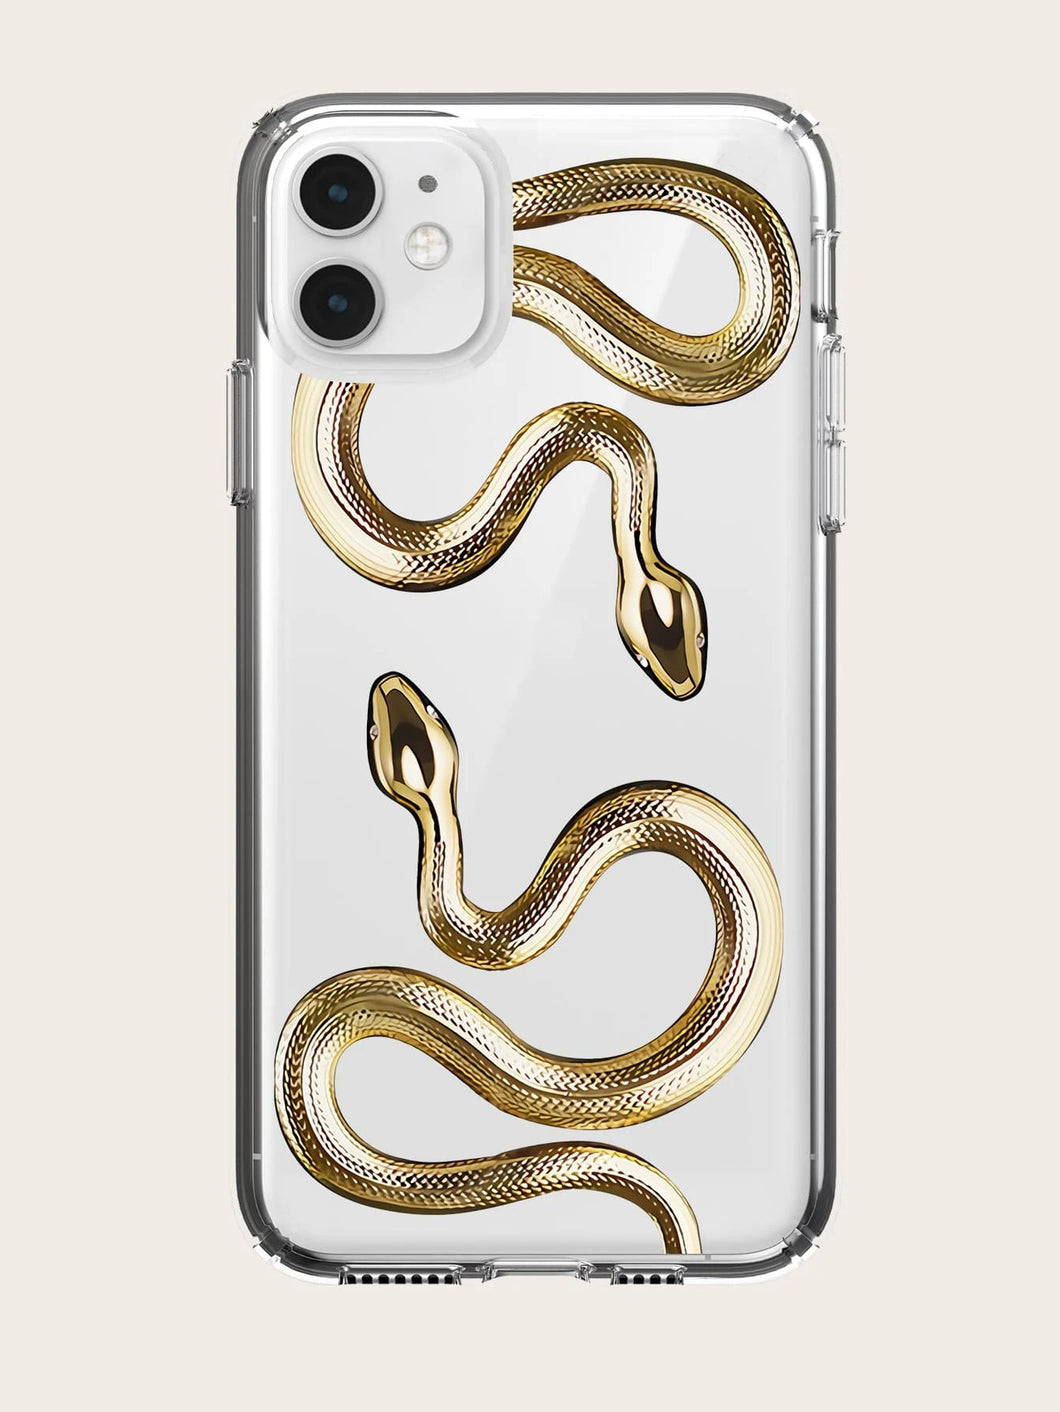 Cover para iPhone con patrón de serpiente: disponible desde iPhone 7 plus hasta iPhone 13 Pro Max✅️